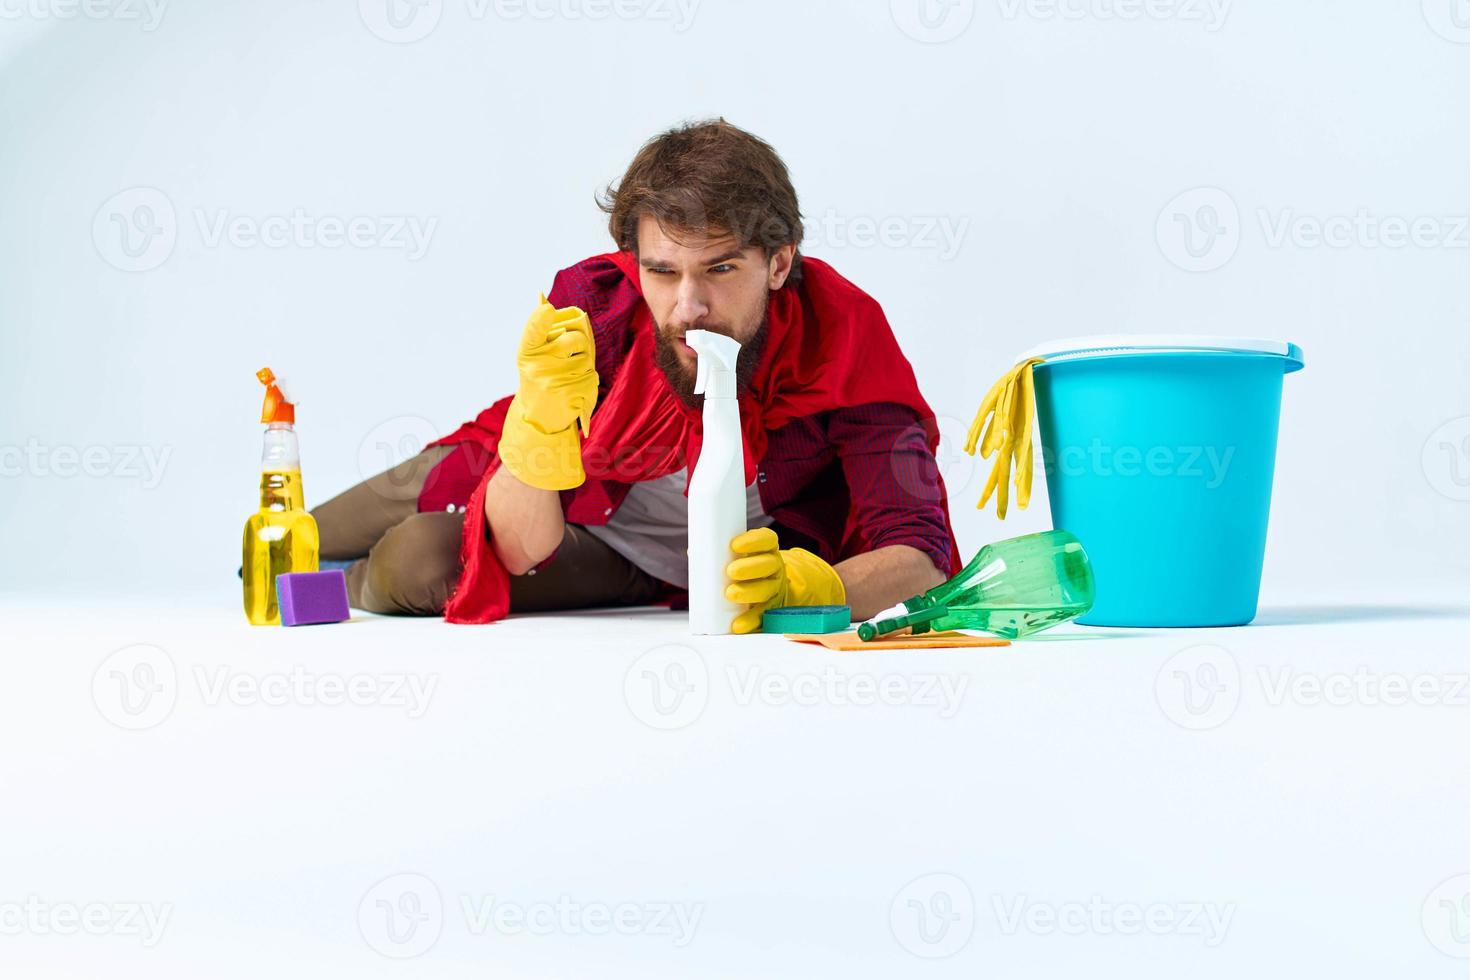 limpiador lavados pisos Servicio tareas del hogar higiene estilo de vida quehaceres foto